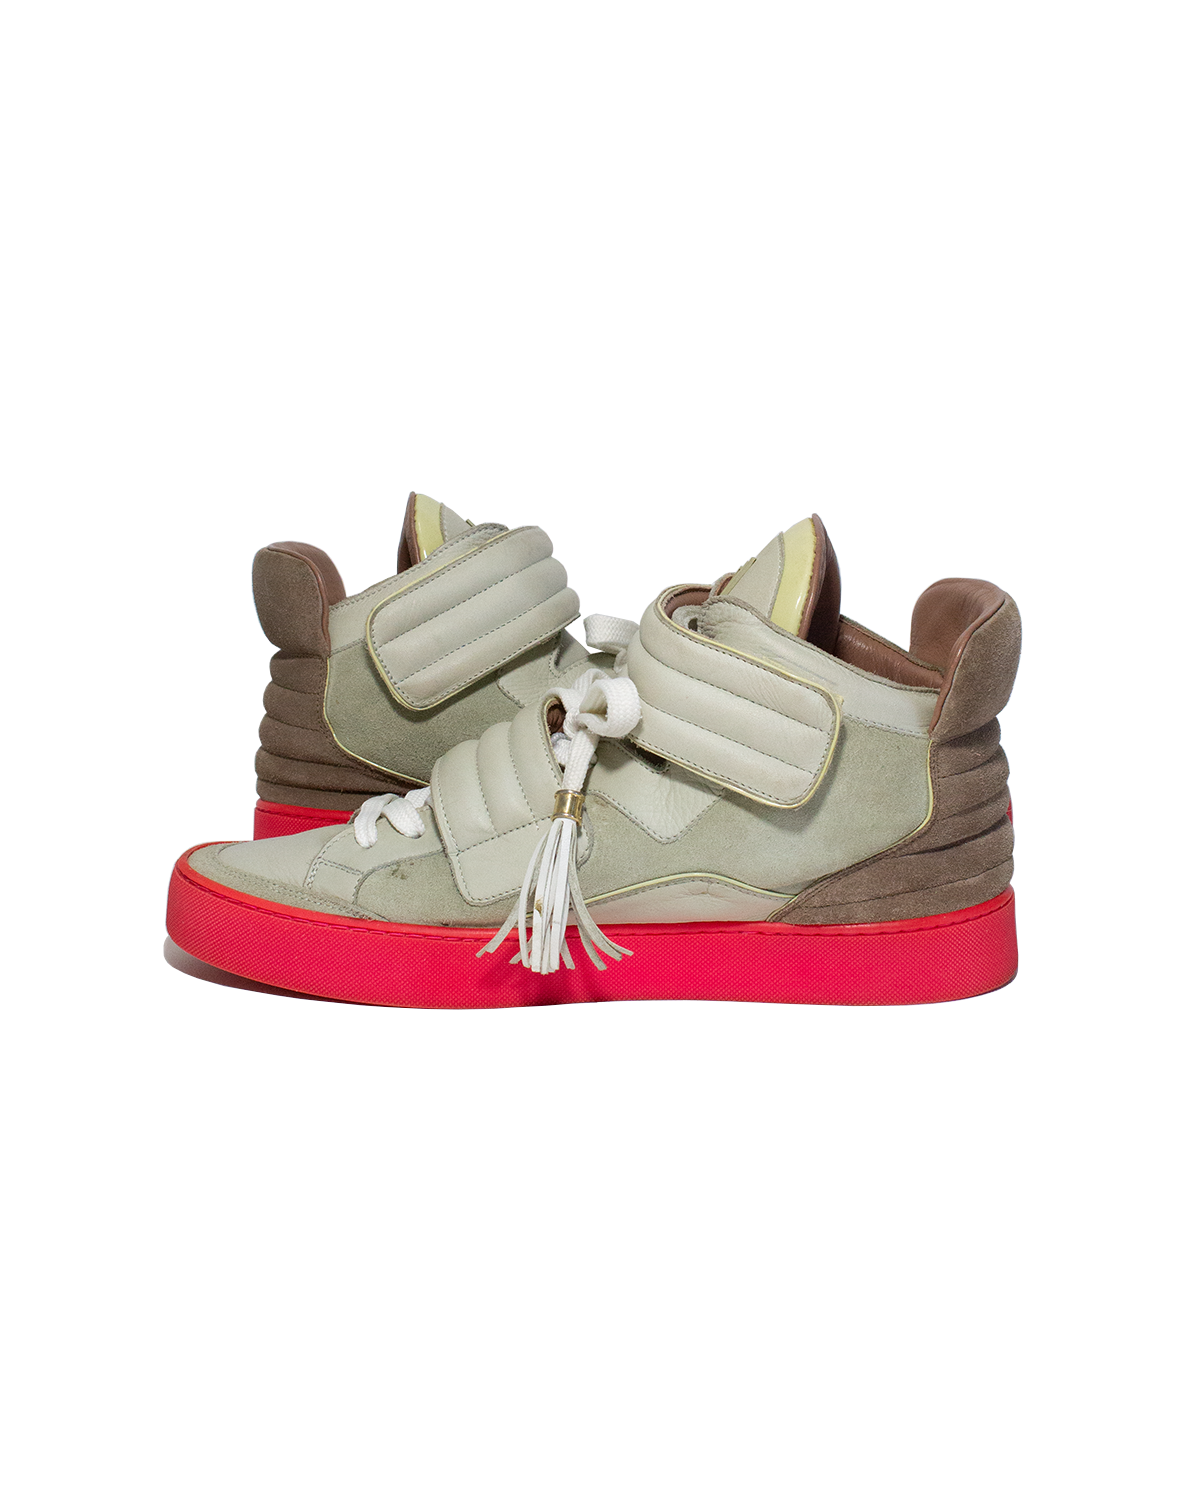 Louis Vuitton Jaspers  Shoes, Sneakers, Louis vuitton